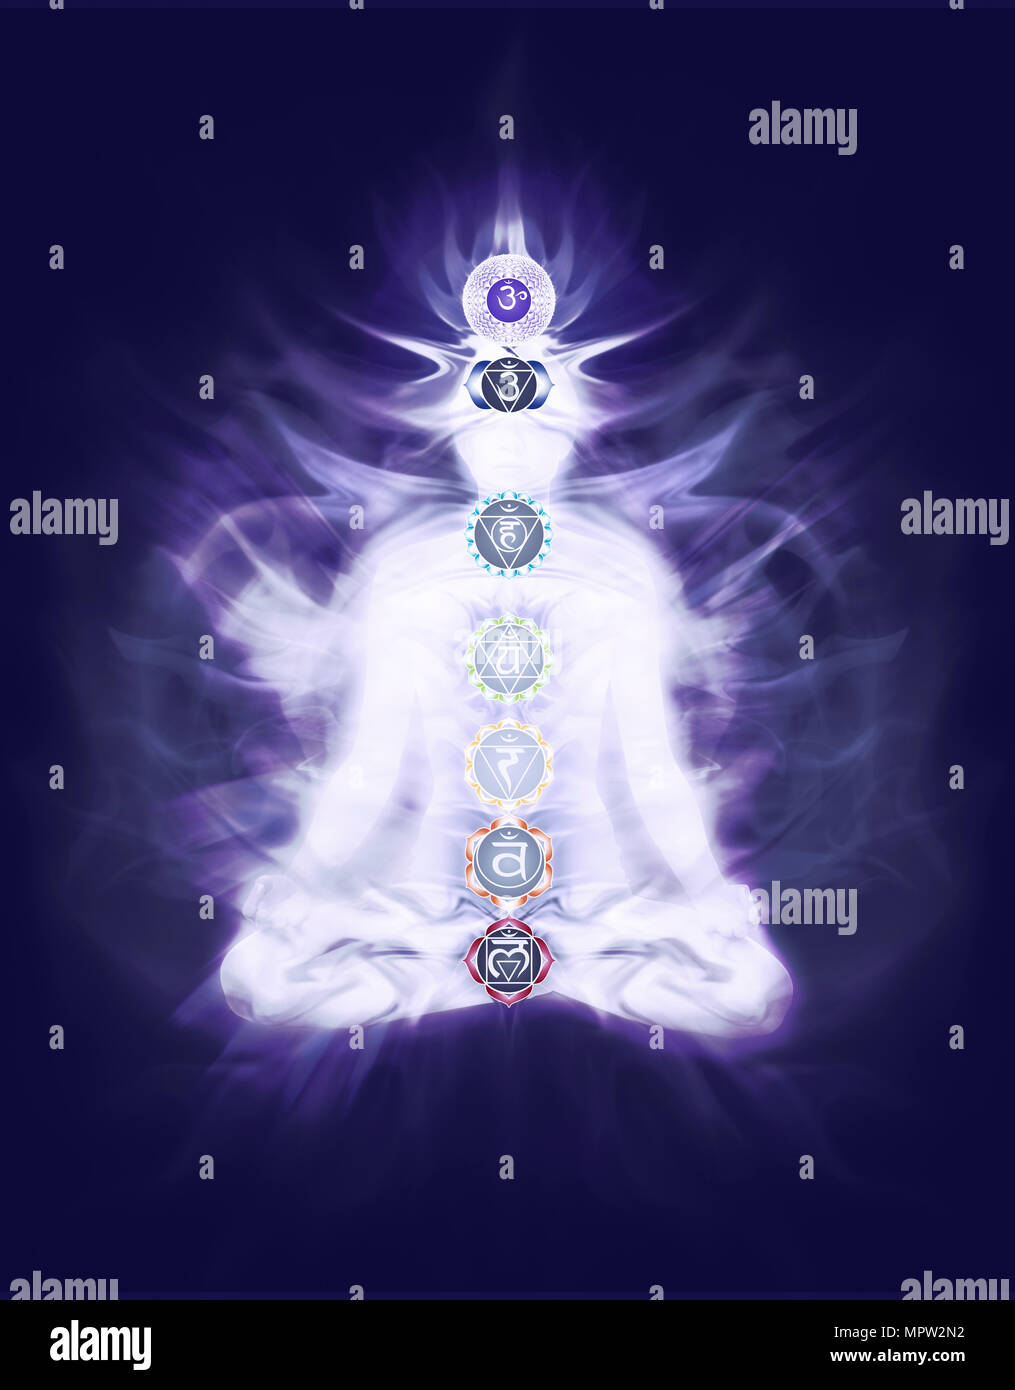 Mujer sentada en la meditación del yoga lotus posar con colores y símbolos del chakra emana energía Qi sobrepuestos en la carrocería en azul marino color púrpura oscuro b Foto de stock